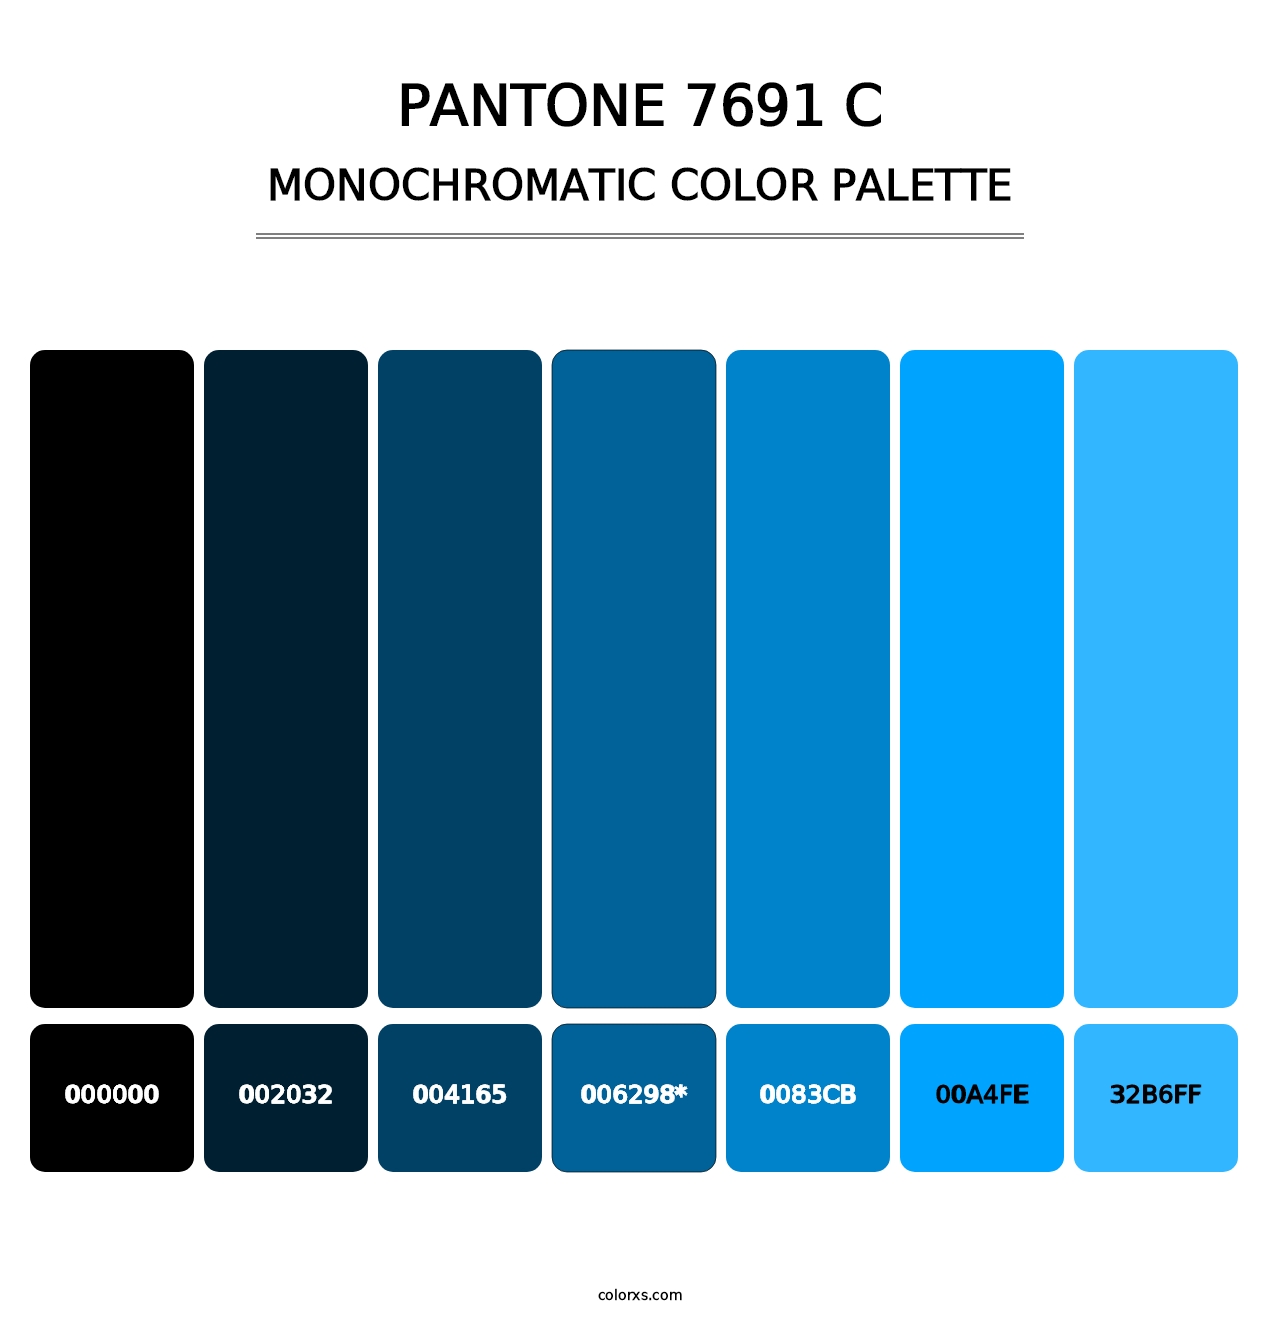 PANTONE 7691 C - Monochromatic Color Palette